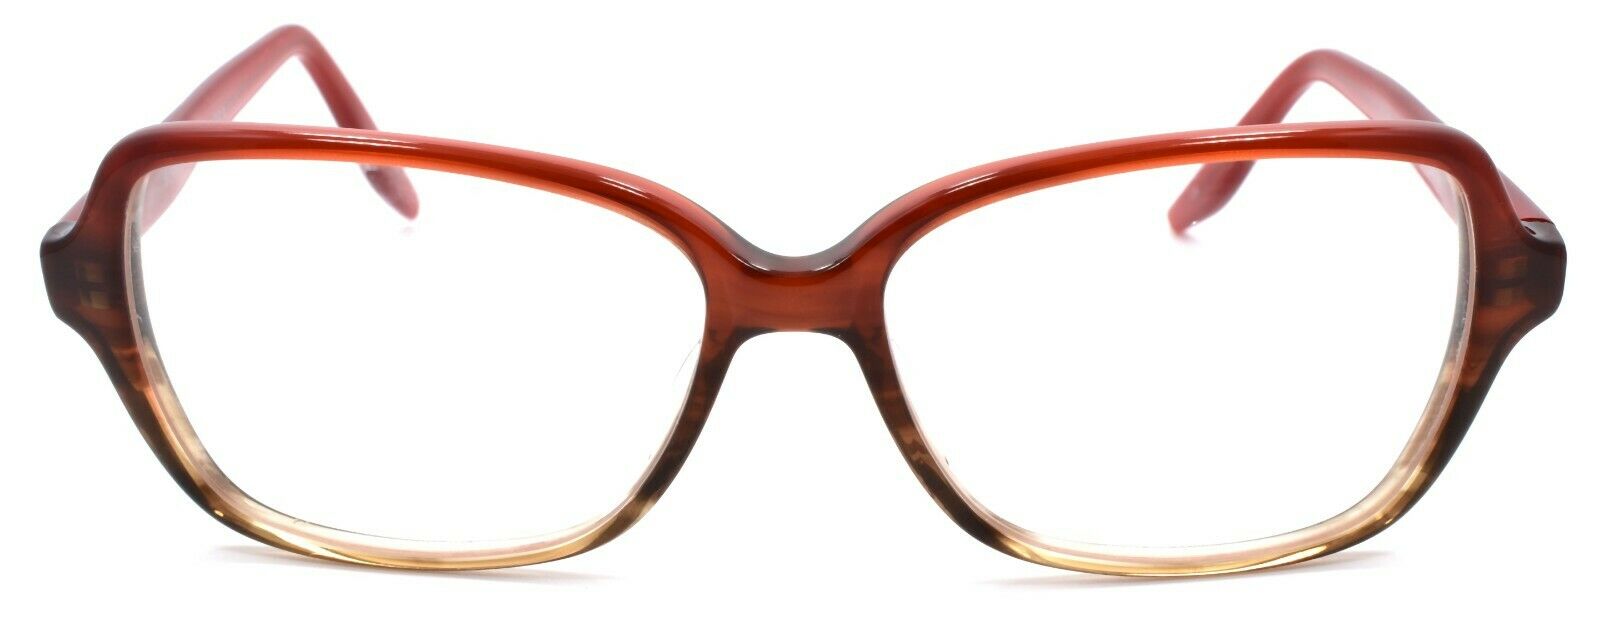 2-Barton Perreira Sintra GYR Women's Eyeglasses Frames 54-15-135 Gypsy Rose-672263039518-IKSpecs